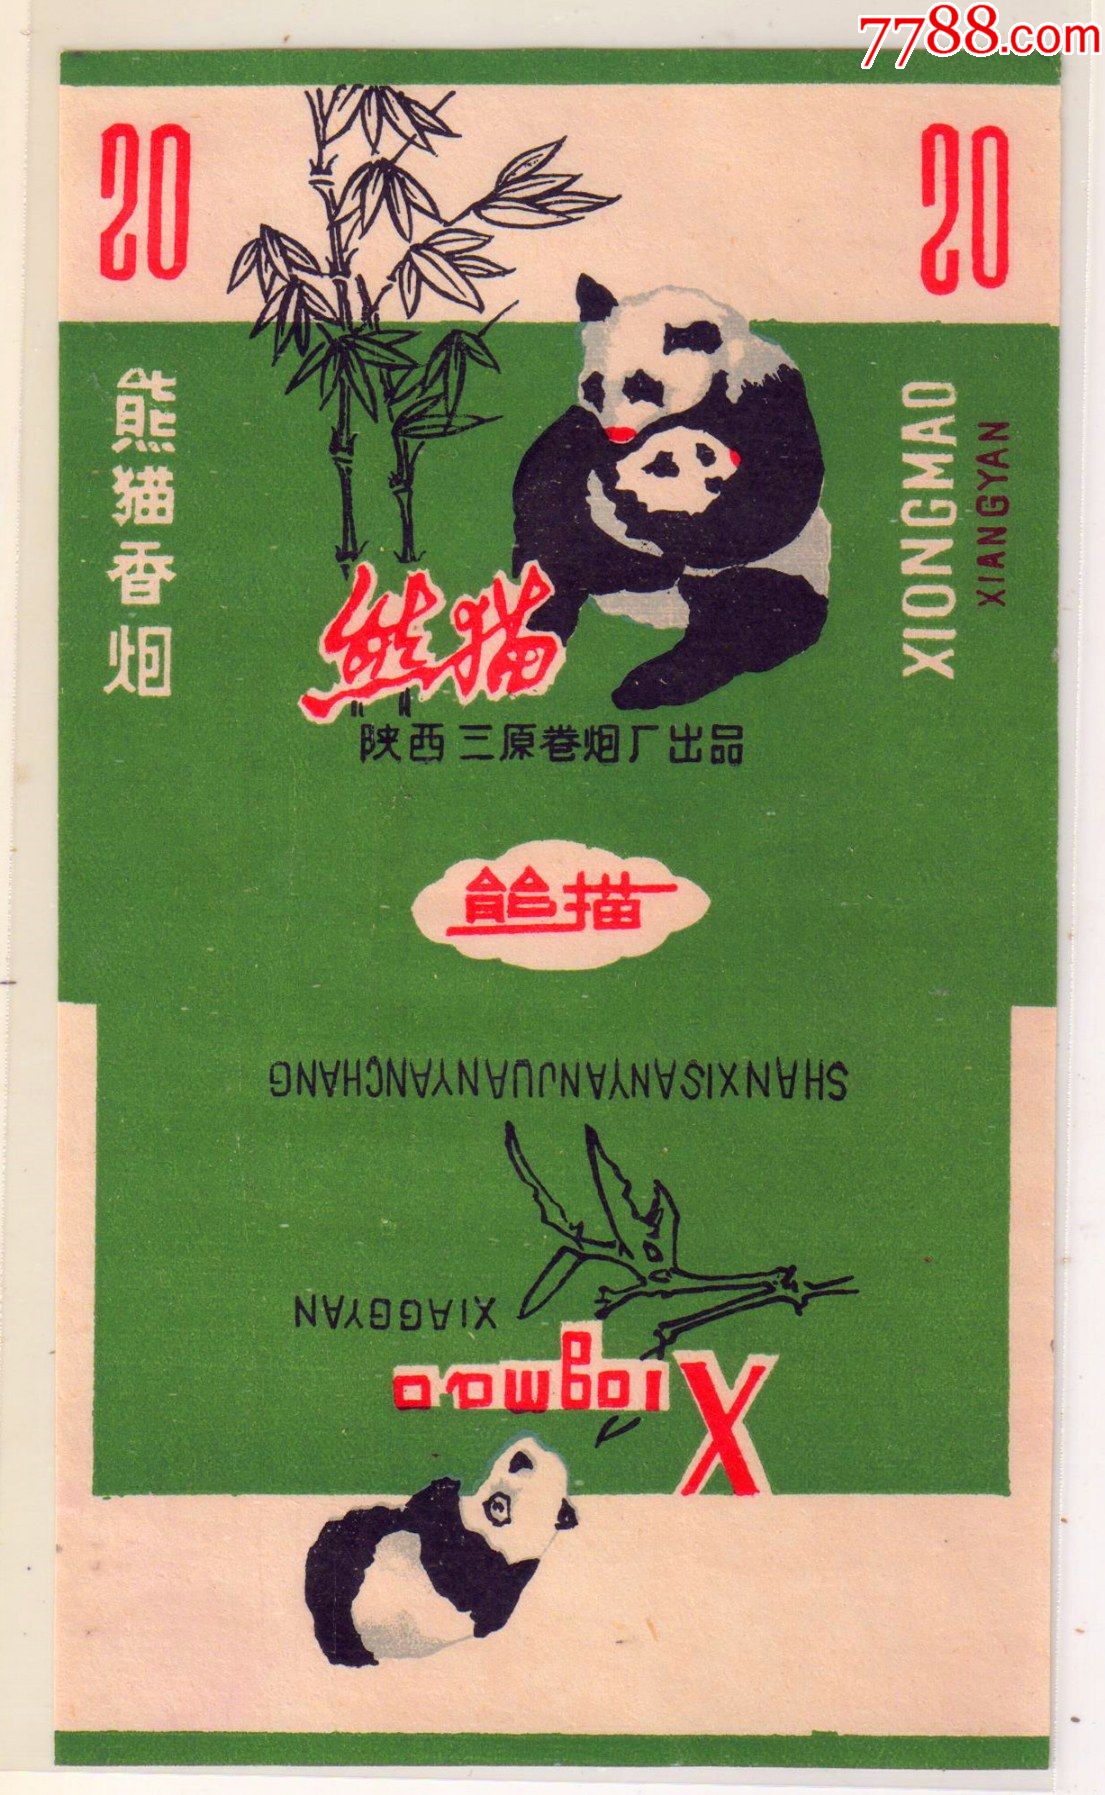 大熊猫香烟绿色图片